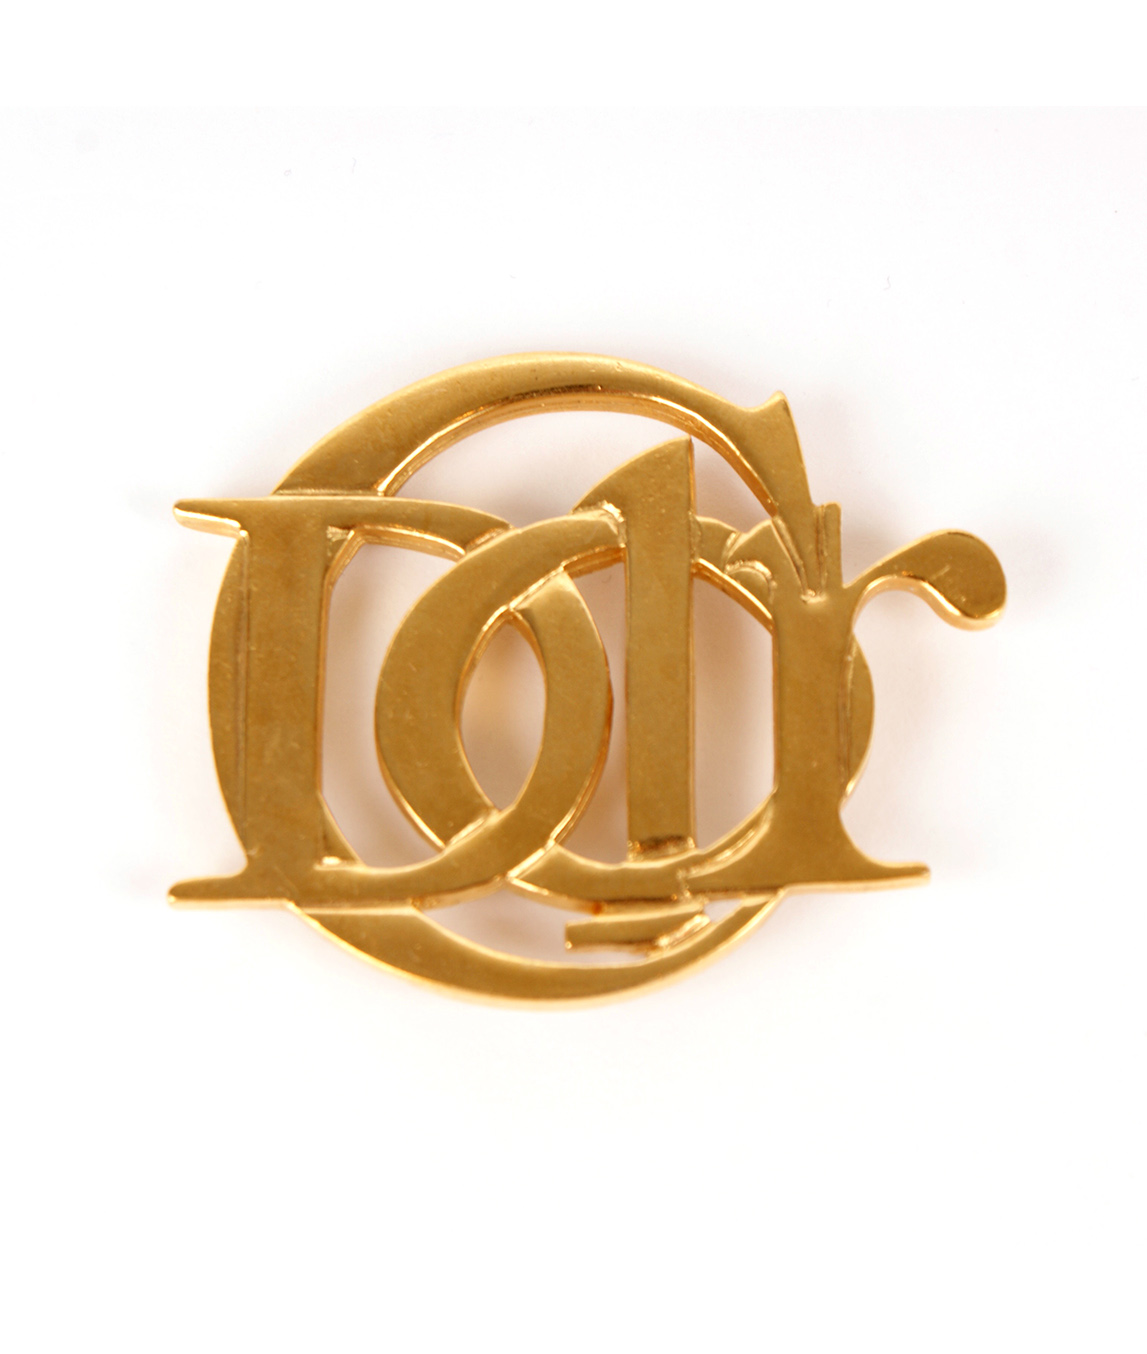 Christian Dior Logo Brooch | Gadelles Vintage